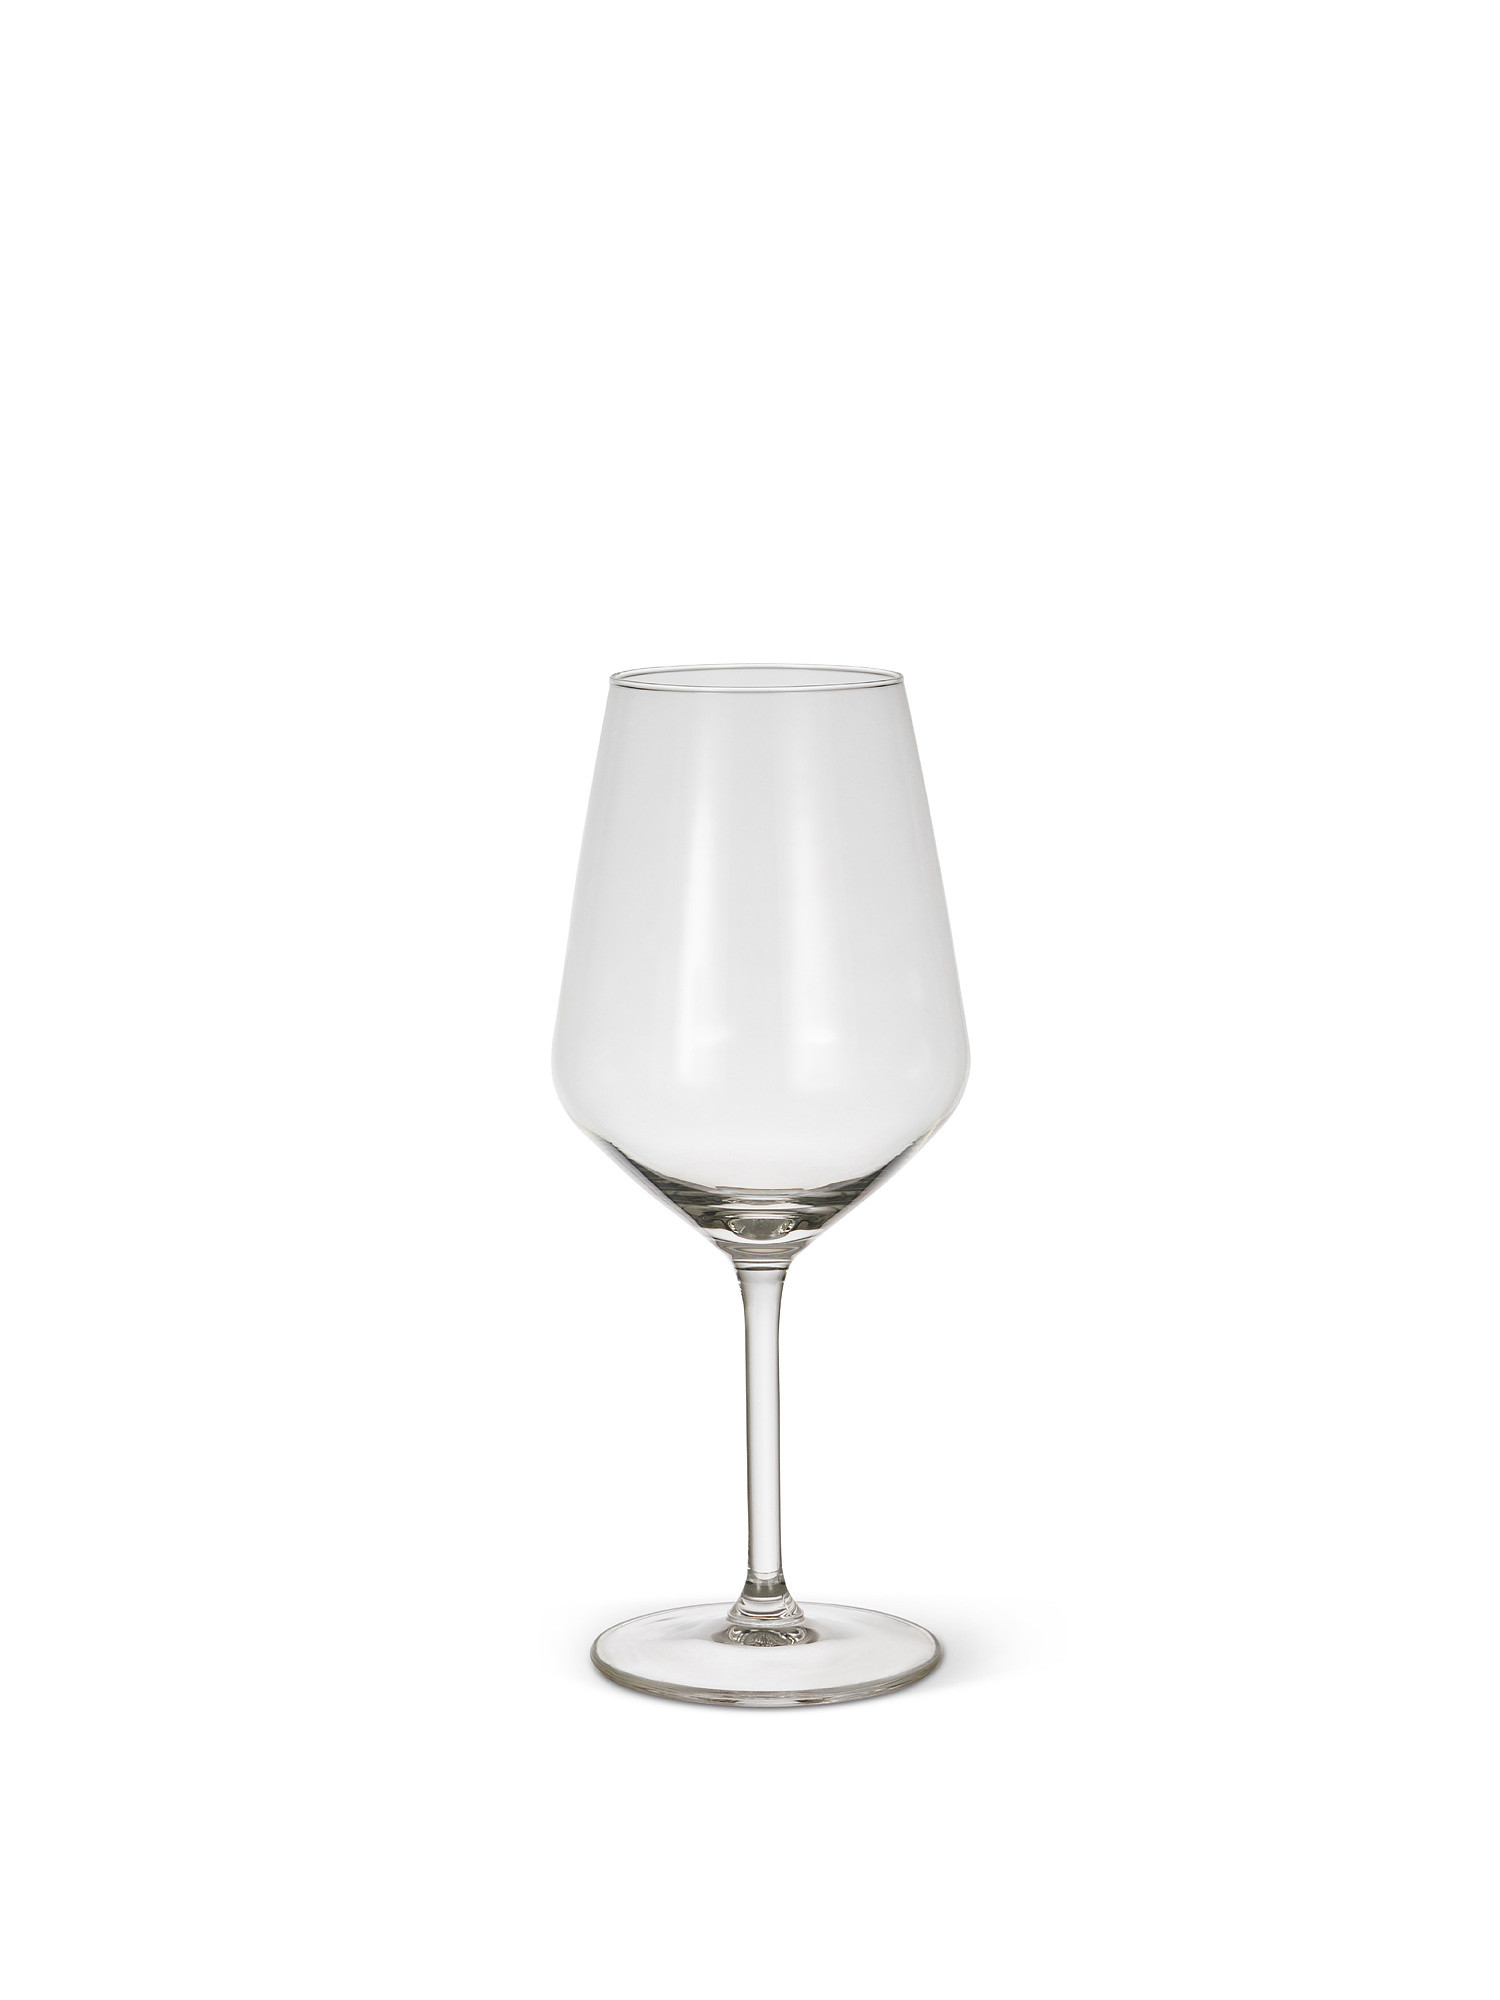 Set of 6 wine glasses 53cl, Transparent, large image number 1